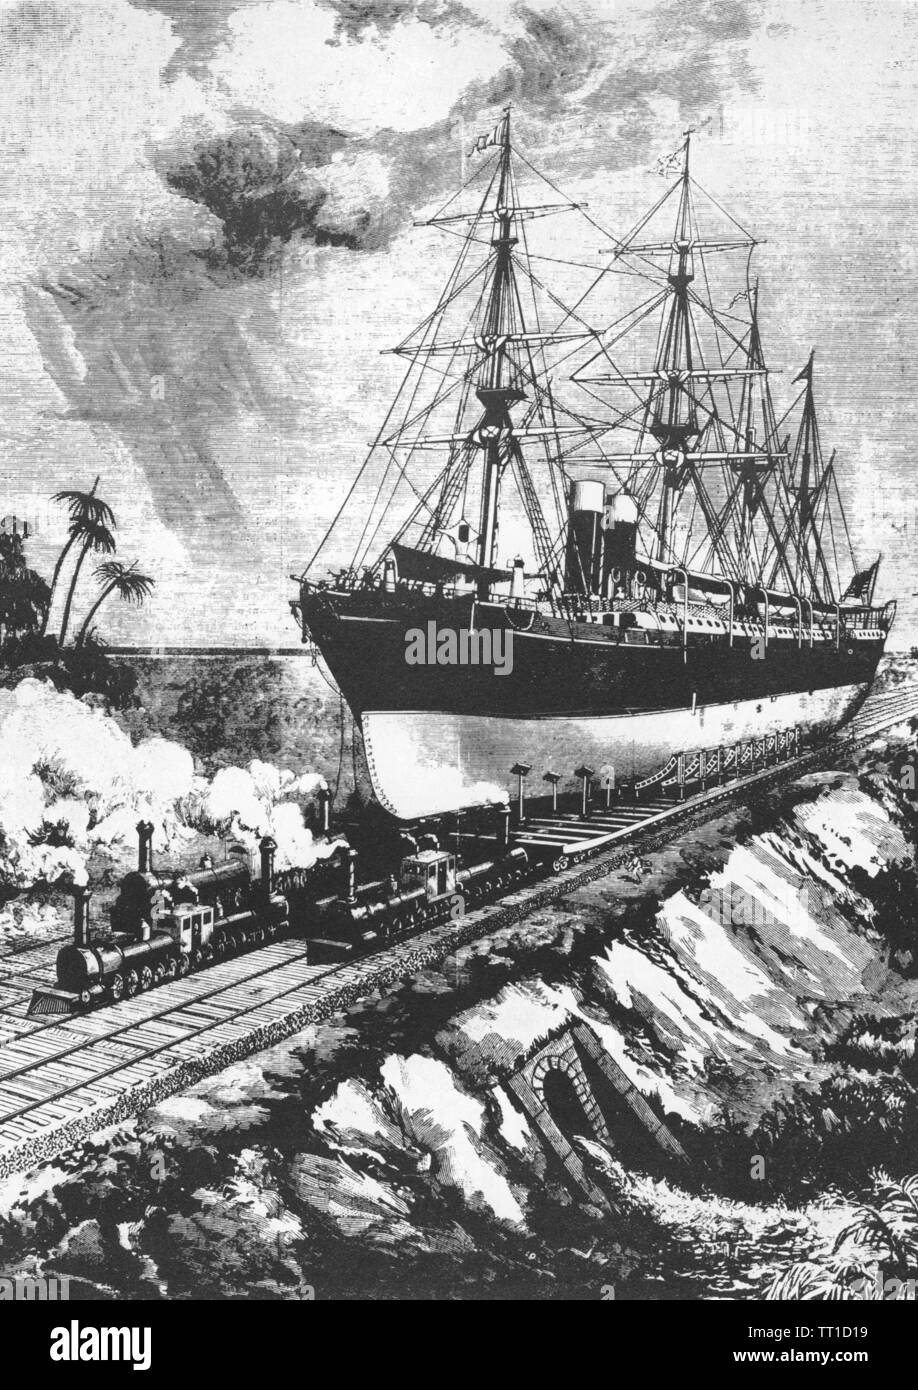 CANAL DE PANAMA illustration futuriste du Scientific American Magazine en 1884 montrant un double-boilerered géant locomotives tirant un navire sur un chemin de fer à travers l'Isthme de Panama Banque D'Images